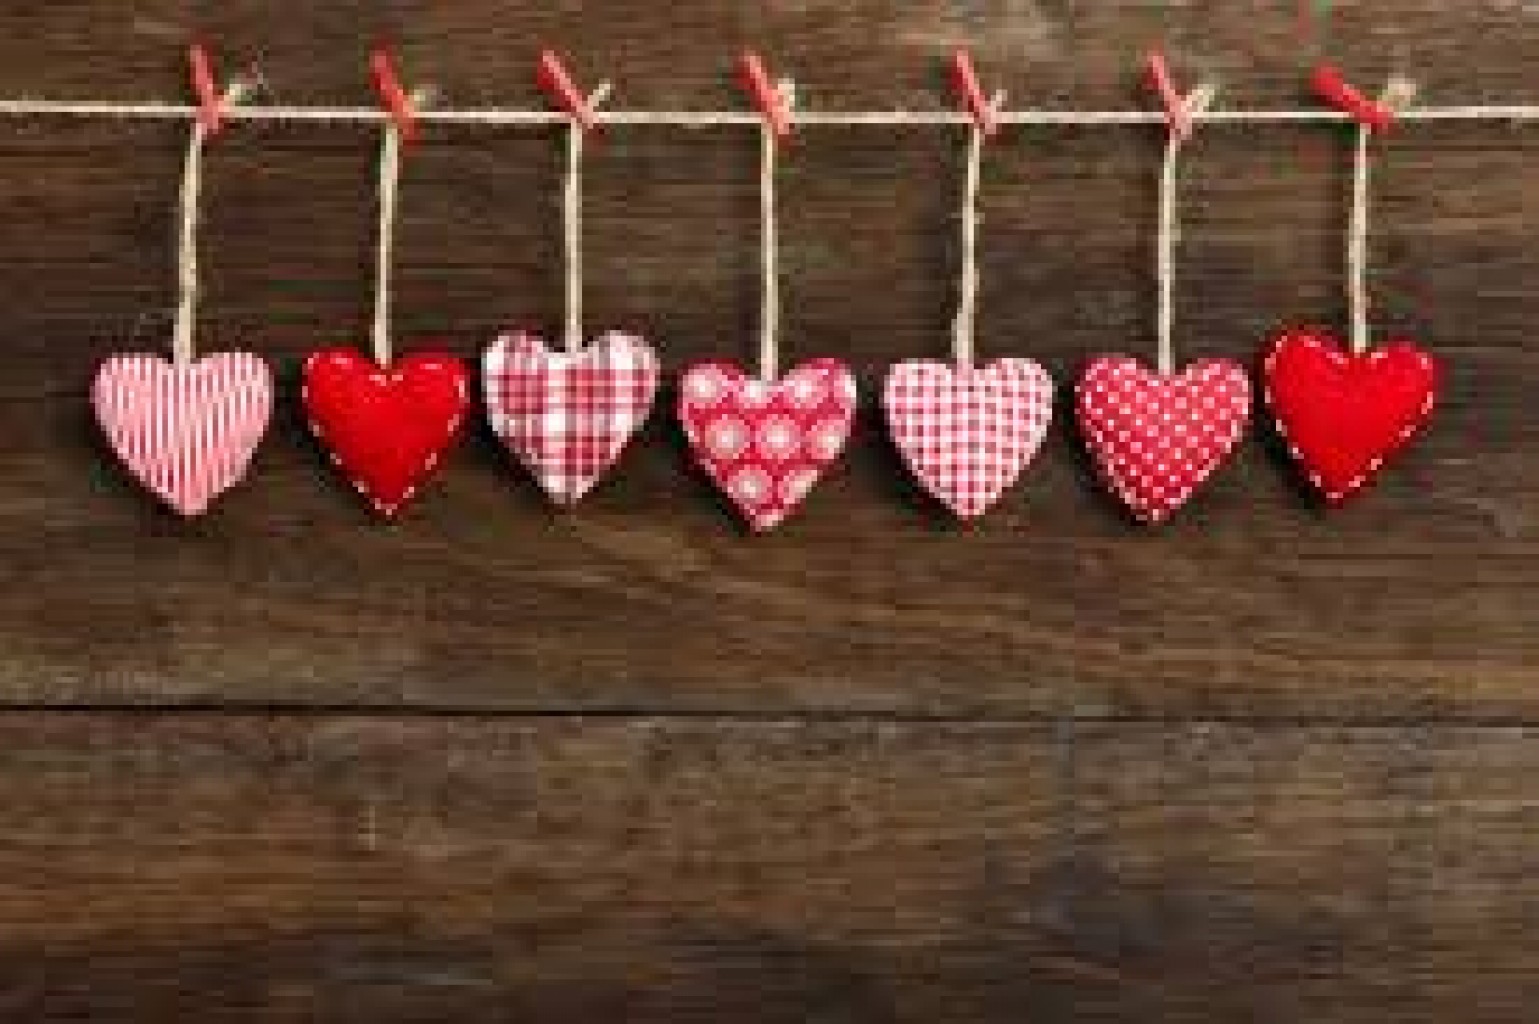 La historia de San Valentín que dio origen al festejo del Día de los Enamorados